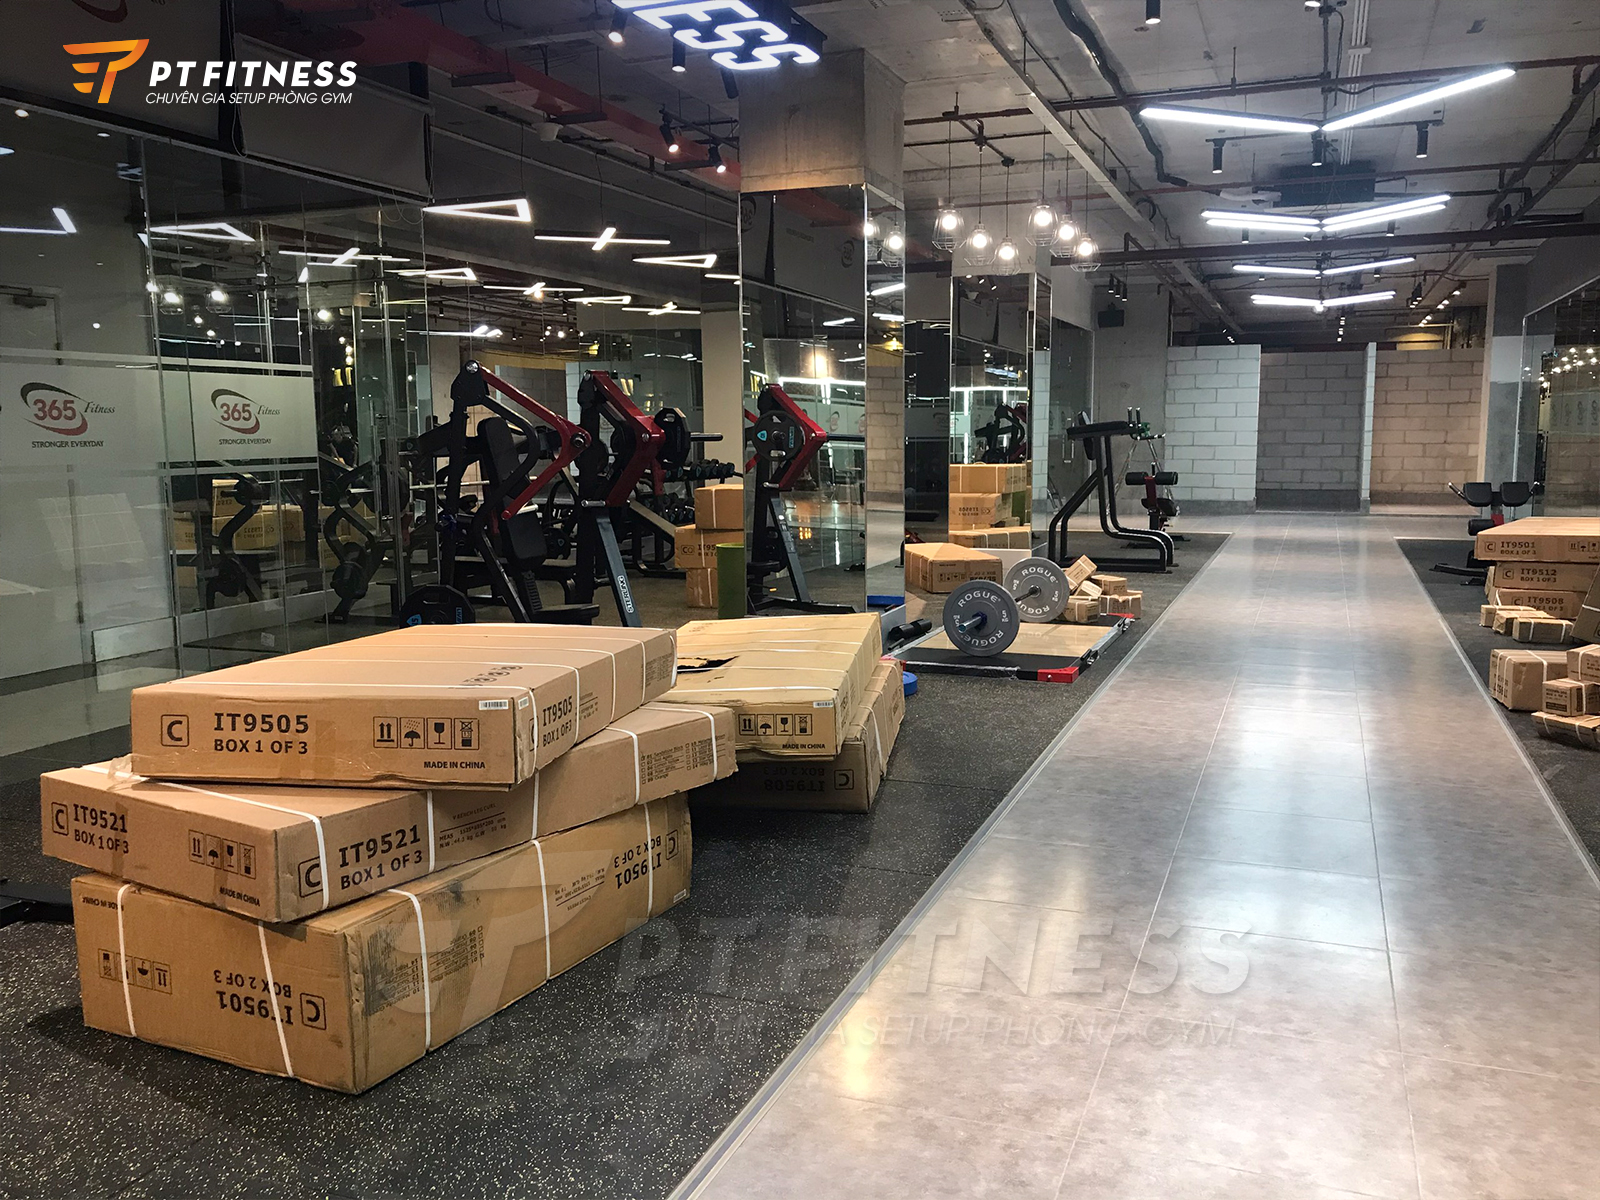 Khâu vận chuyển máy móc đến phòng gym thương mại 365 Fitness & Yoga tại Hà Nội